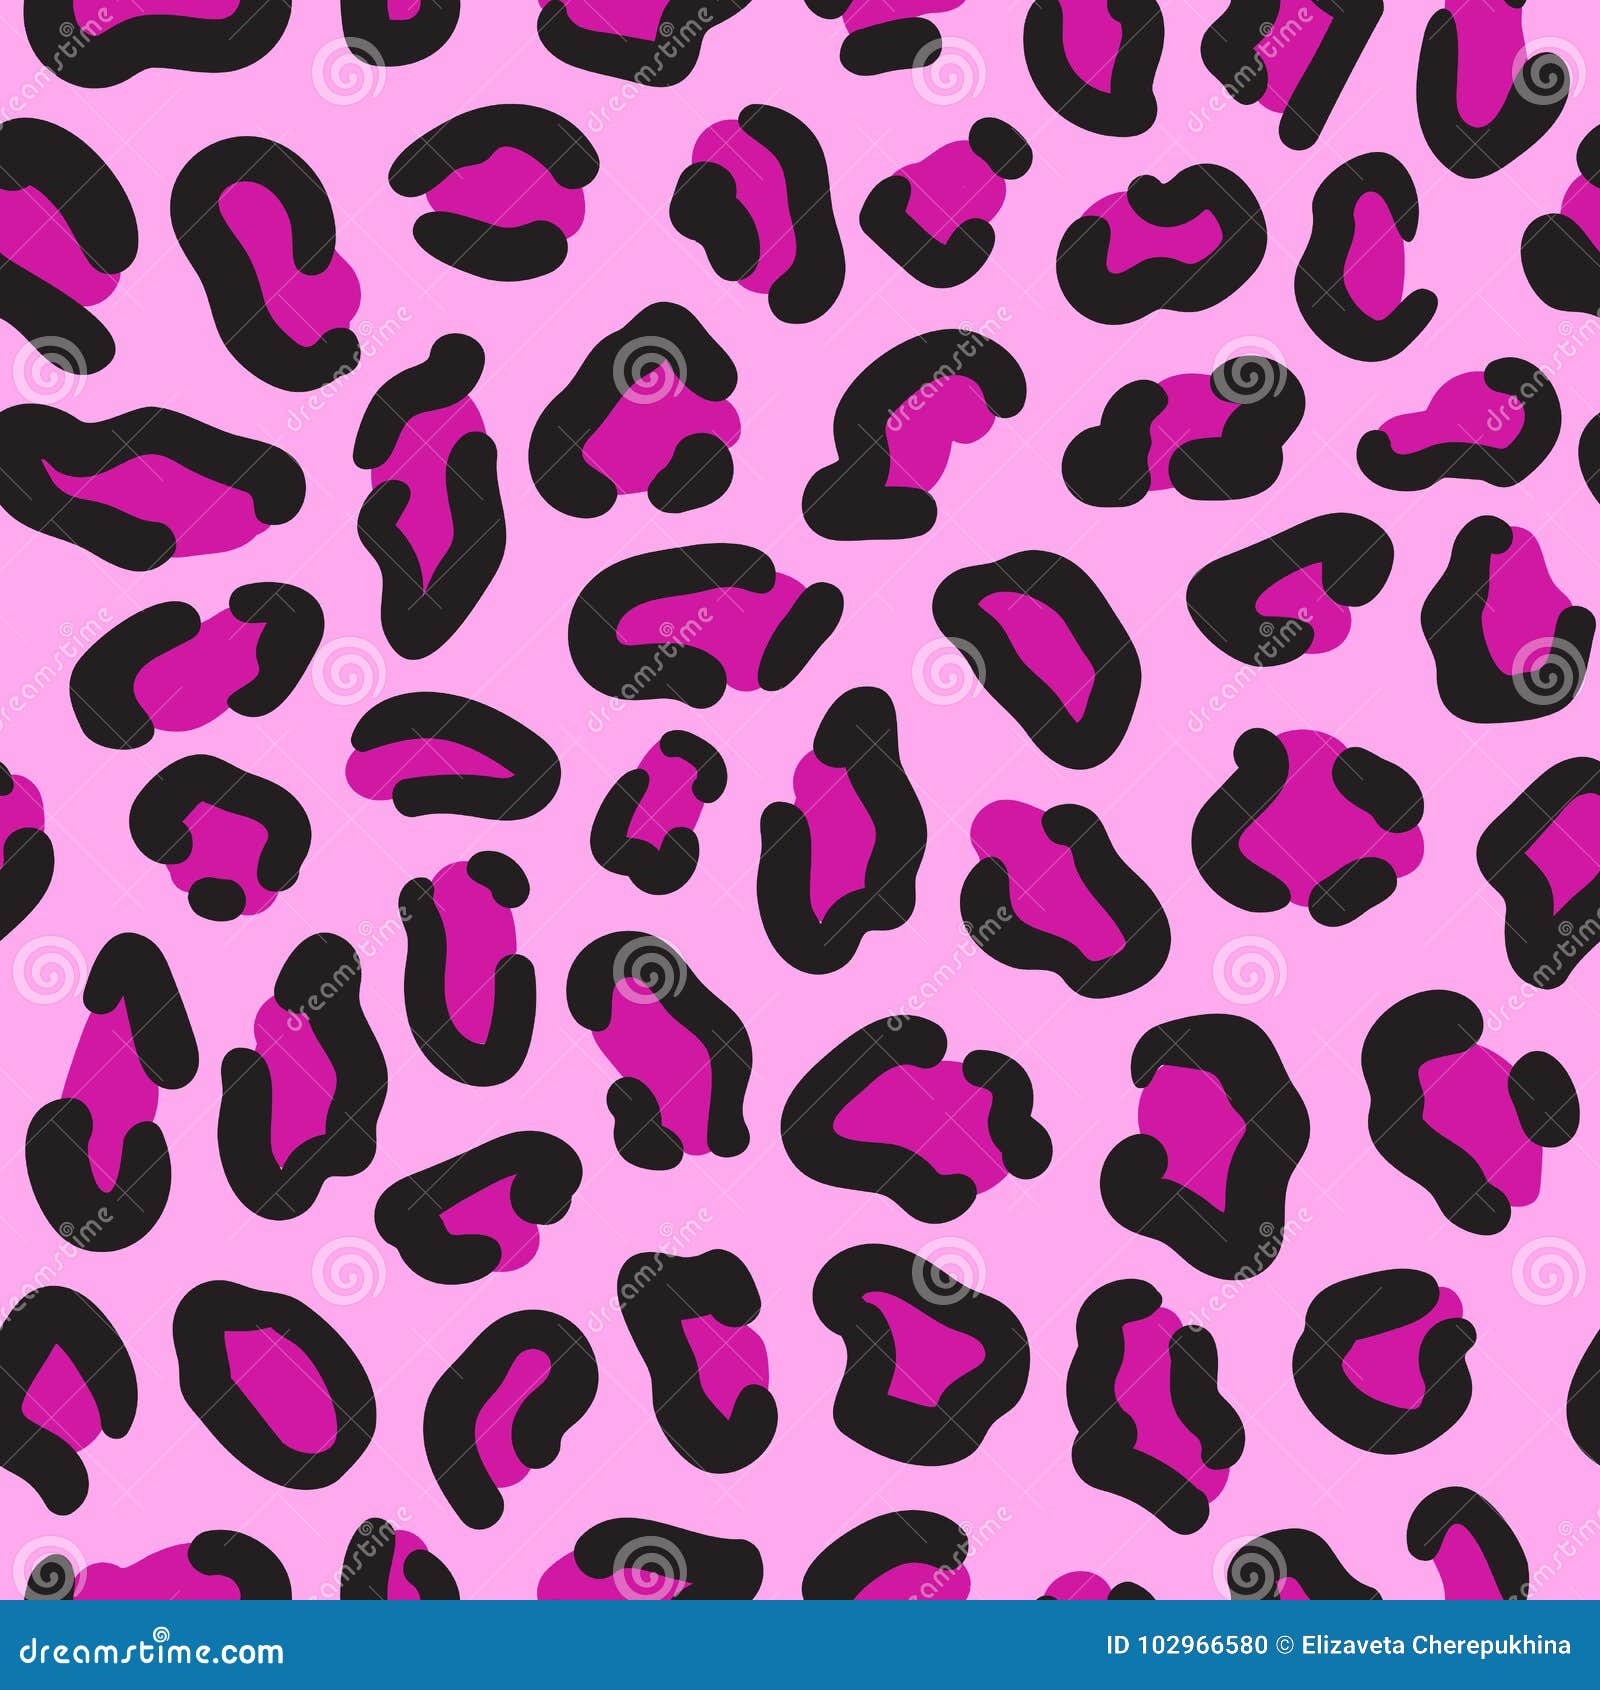 Leopard Seamless Pattern. Leopard Spots. Fashion Cheetah Print. Popular ...